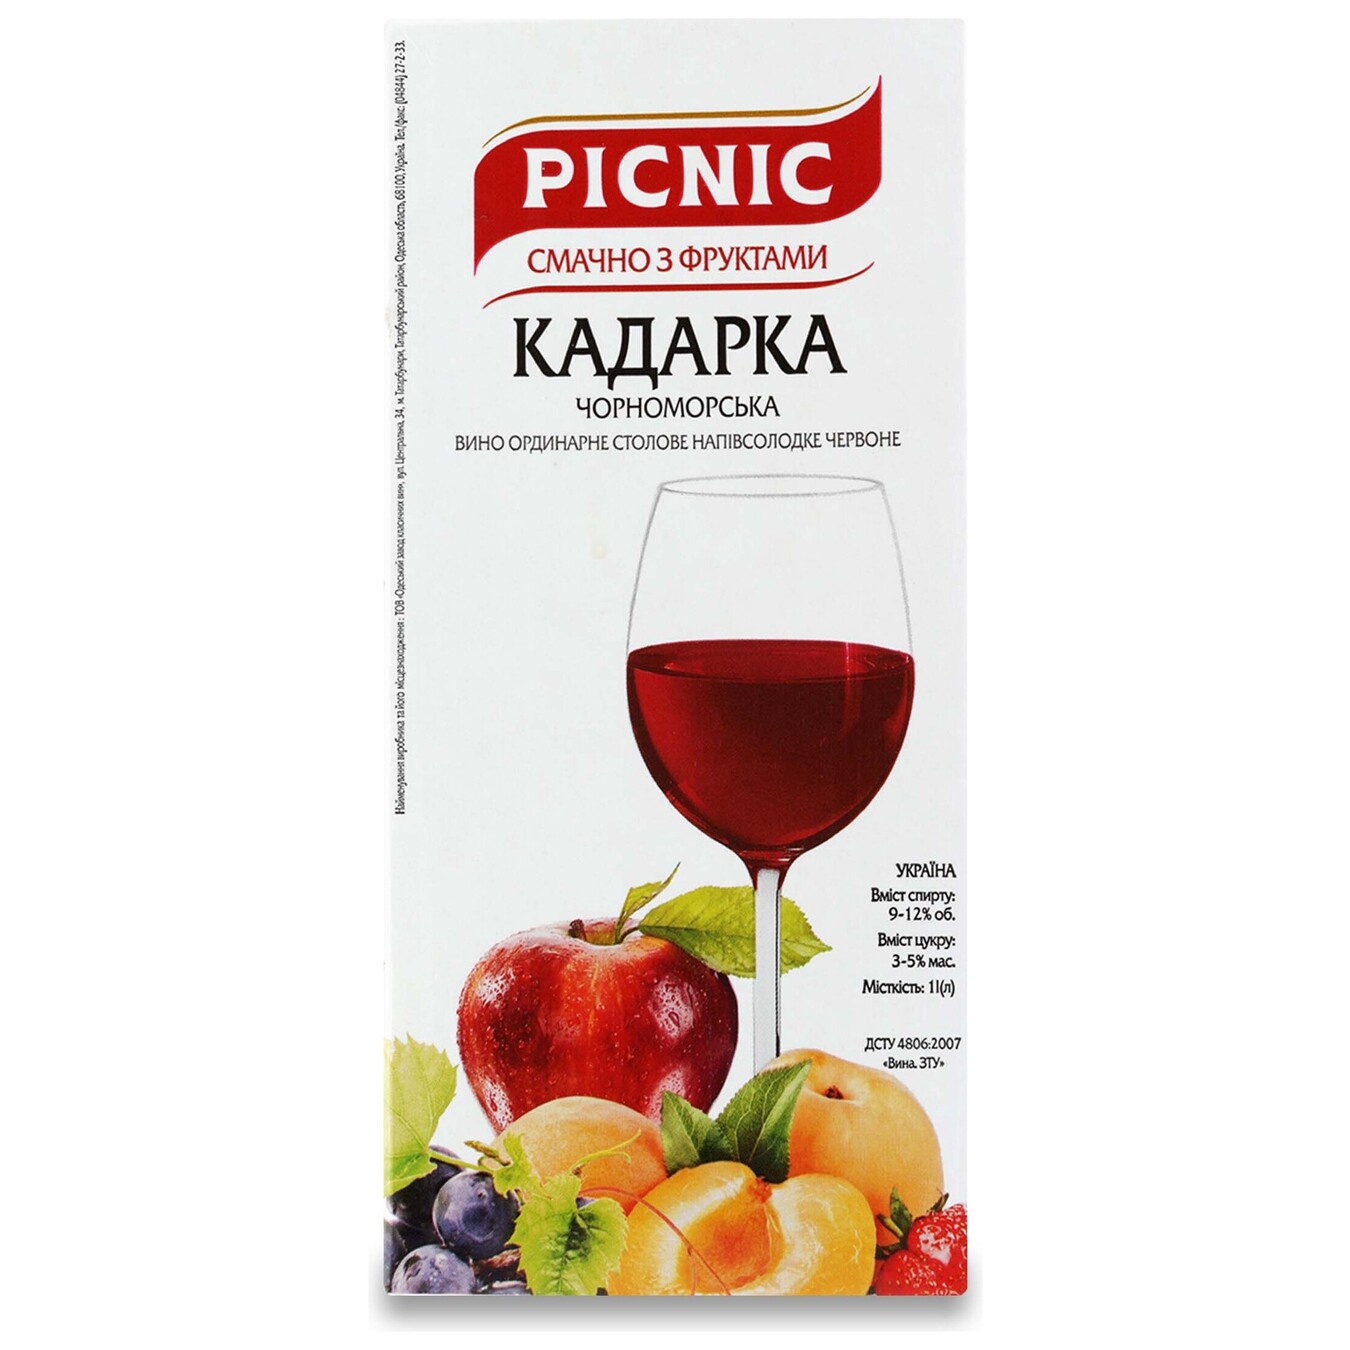 Вино Picnic Кадарка черноморская столовое красное полусладкое 12% 1л